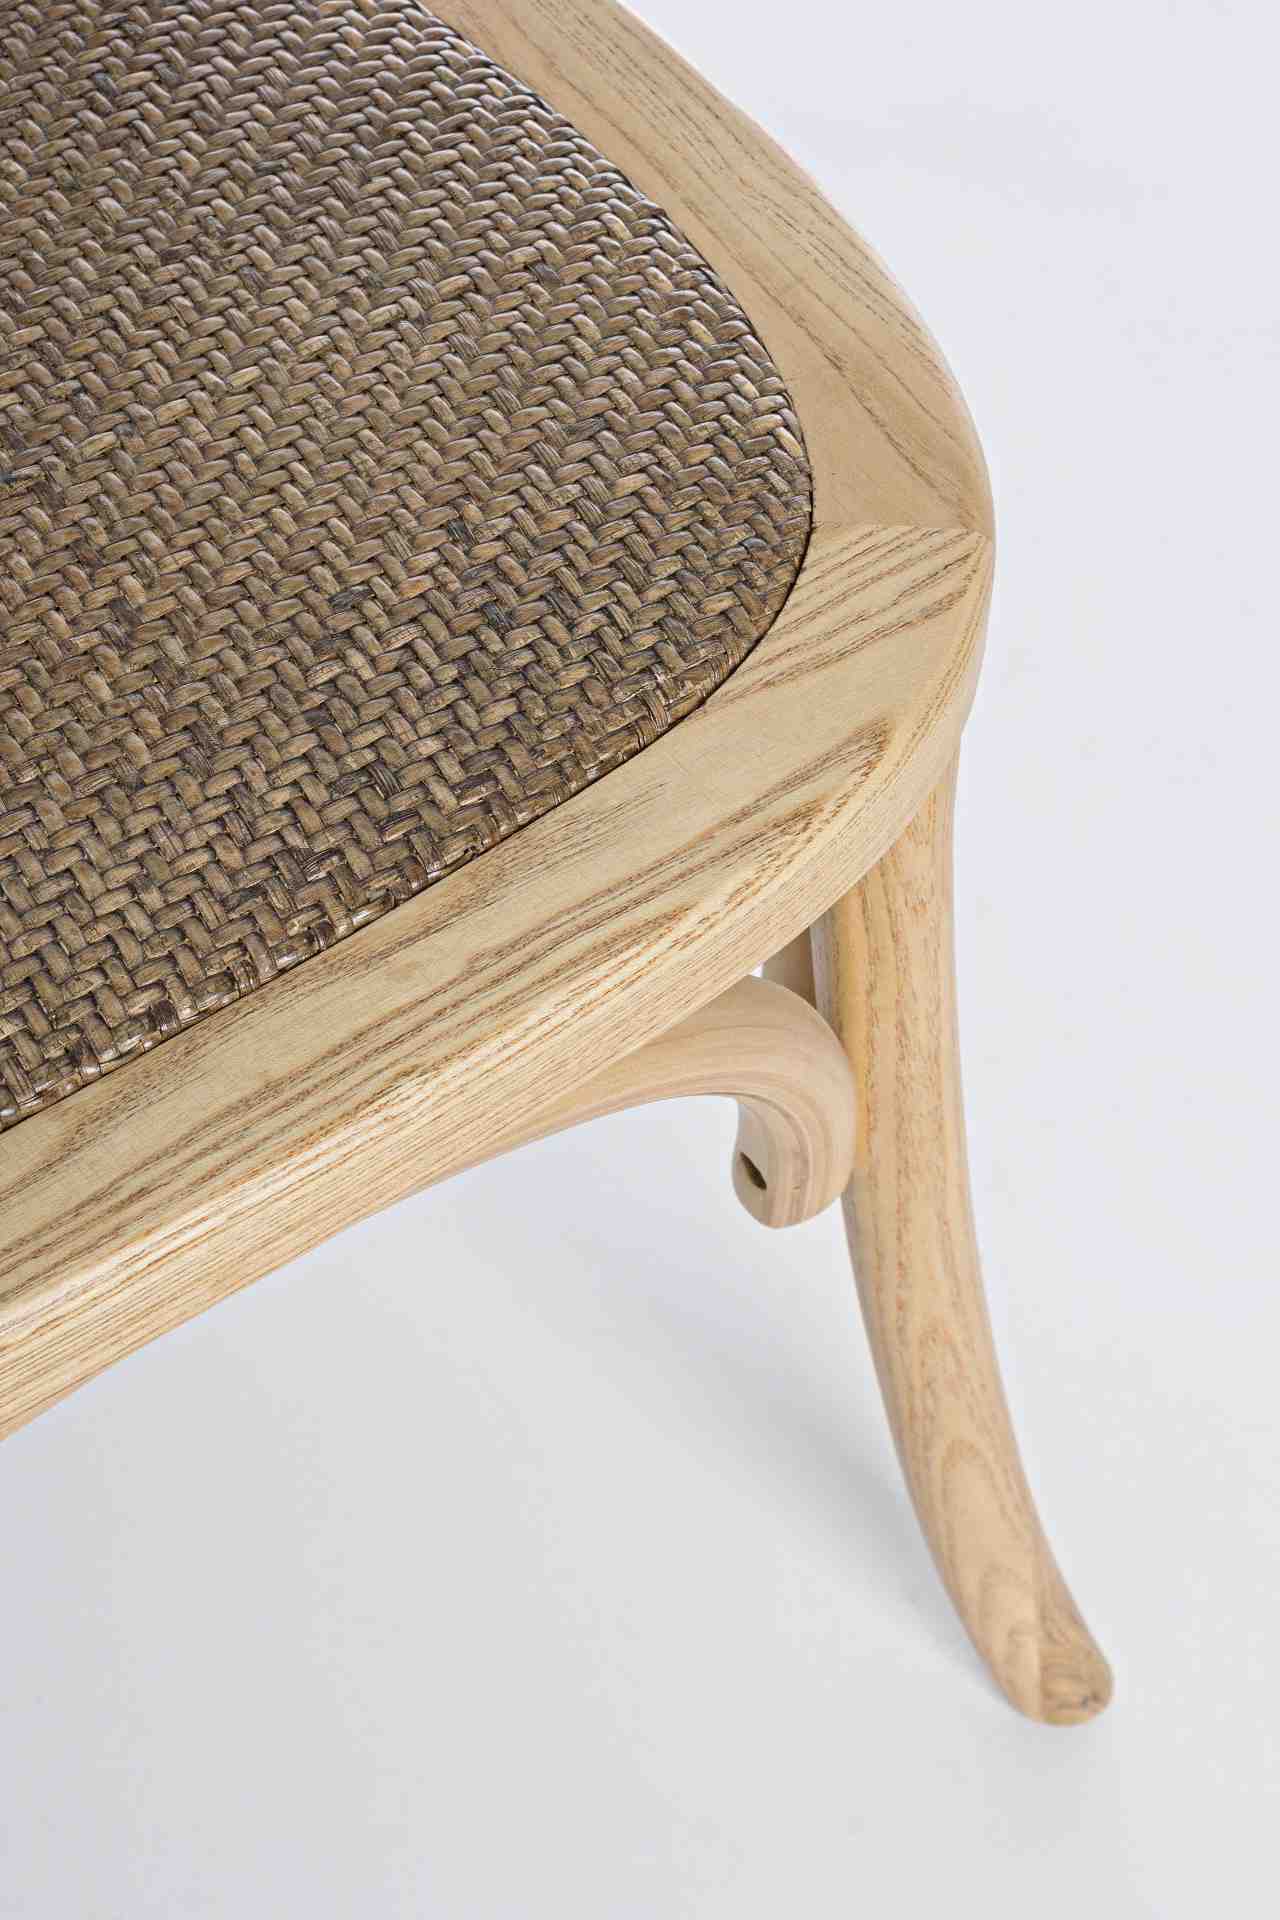 Der Stuhl Carrel überzeugt mit seinem klassischen Design. Gefertigt wurde der Stuhl aus Ulmenholz, welches einen natürlichen Farbton besitzt. Die Sitz- und Rückenfläche sind aus Rattan. Die Sitzhöhe beträgt 46 cm.